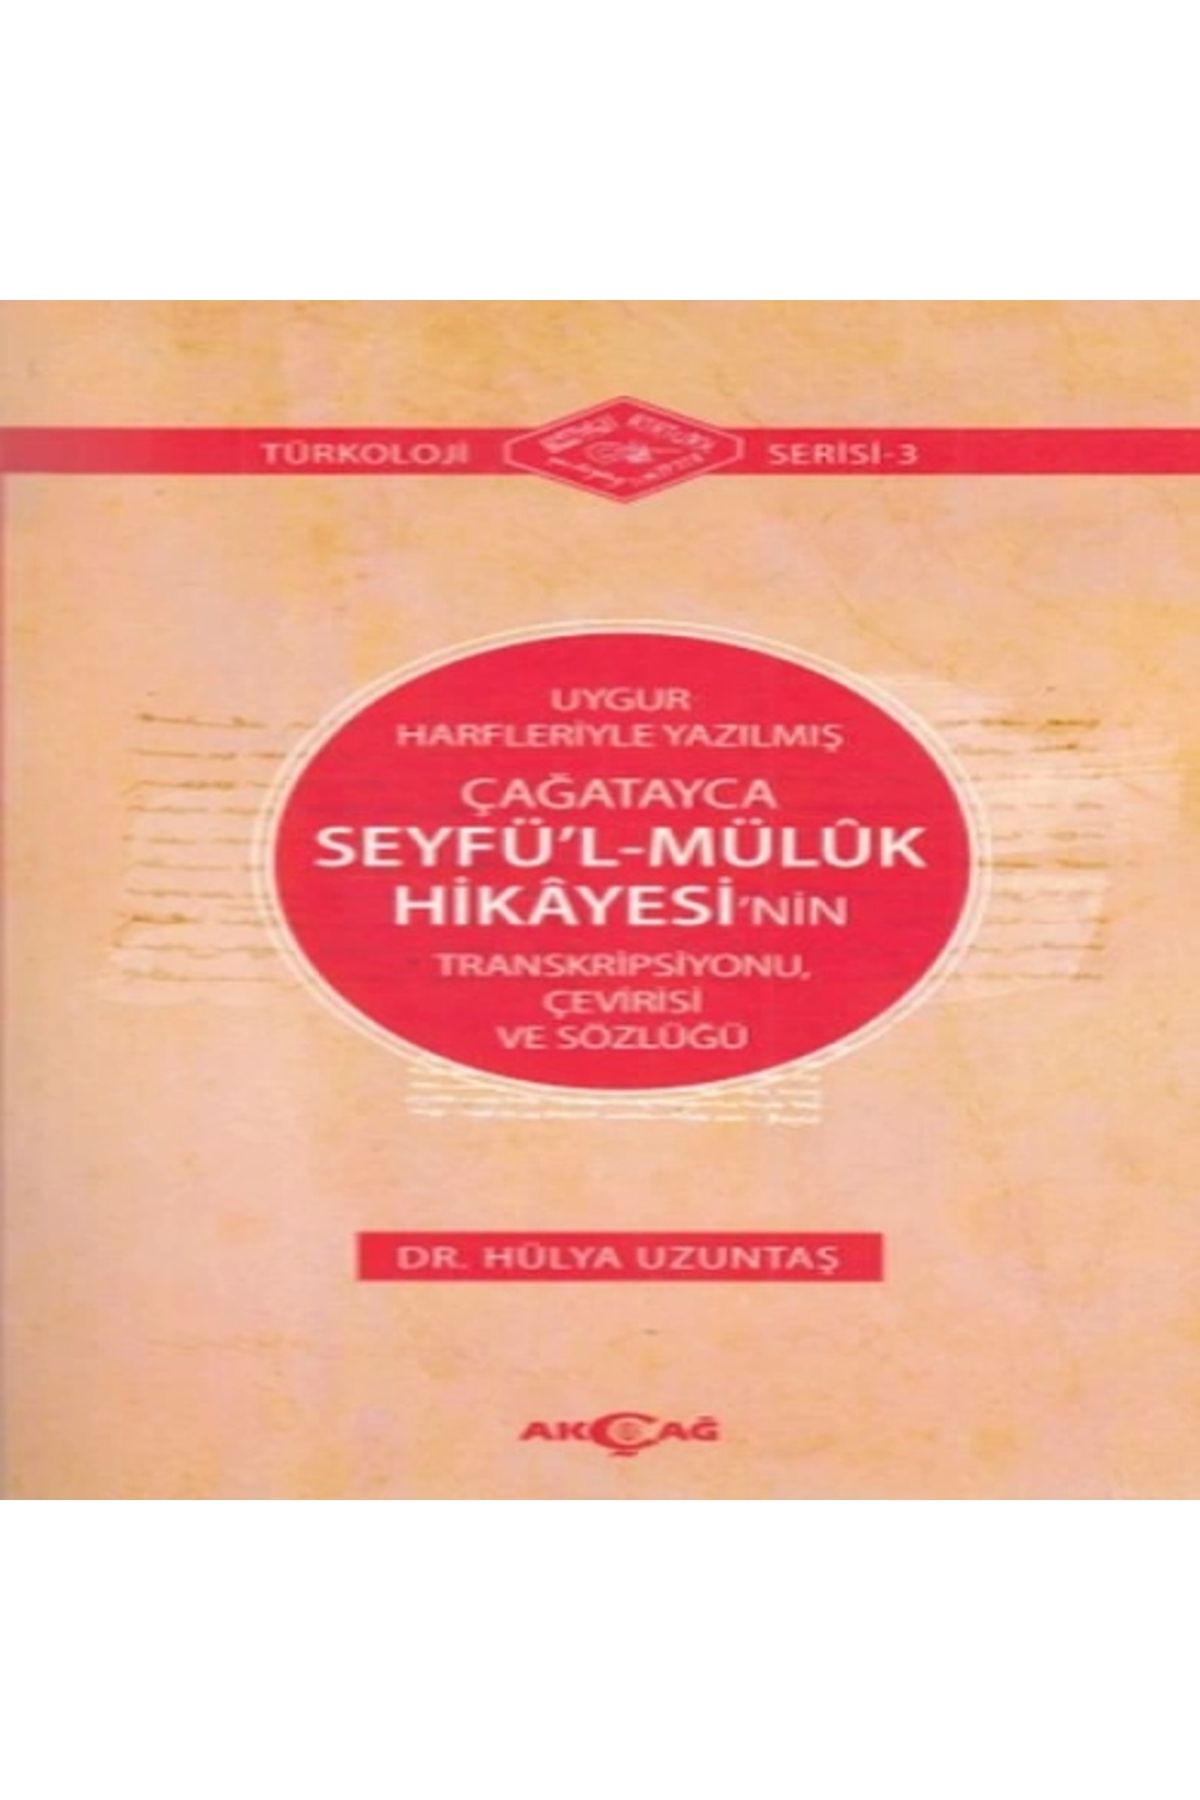 Akçağ Yayınları Uygur Harfleriyle Yazılmış Çağatayca Seyfü’l-Mülük Hikayesi’nin Transkripsiyonu, Çevirisi ve Sözlüğü